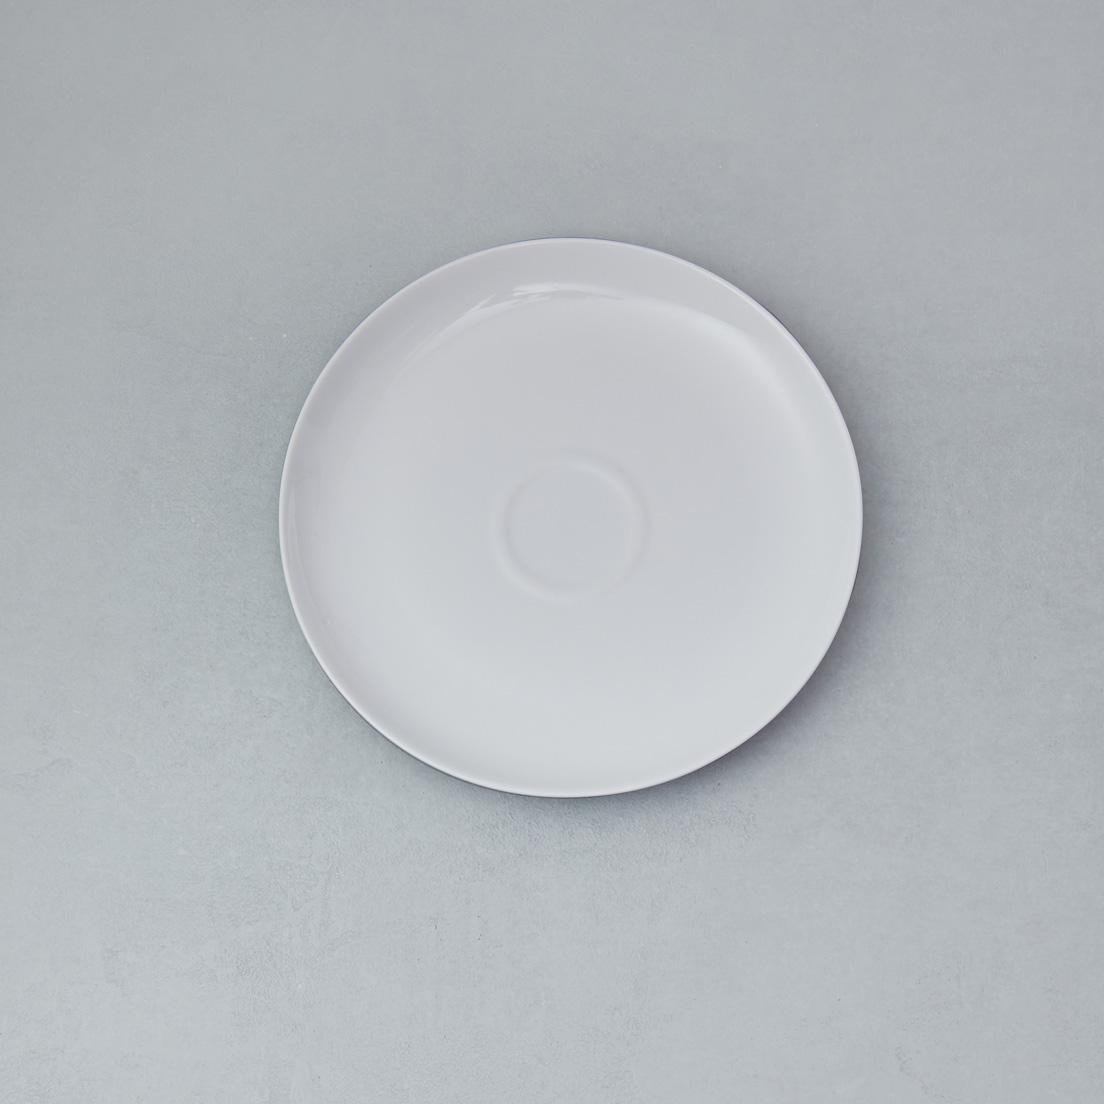 HIBITO〈アクタス〉
 by セシリエ・マンツ
セシリエ・マンツがデザインしたプレーンな白い皿はプレート中央に小さなリング模様を持つ。プレートを重ねた時に、表面が傷つかないようにあしらわれており、直径に合わせて少しずつ表情が異なる。それにより食卓で波紋のような変化が広がることを意図した。プレート19.5㎝ 2,750円（アクタス TEL 03 5269 3207）。